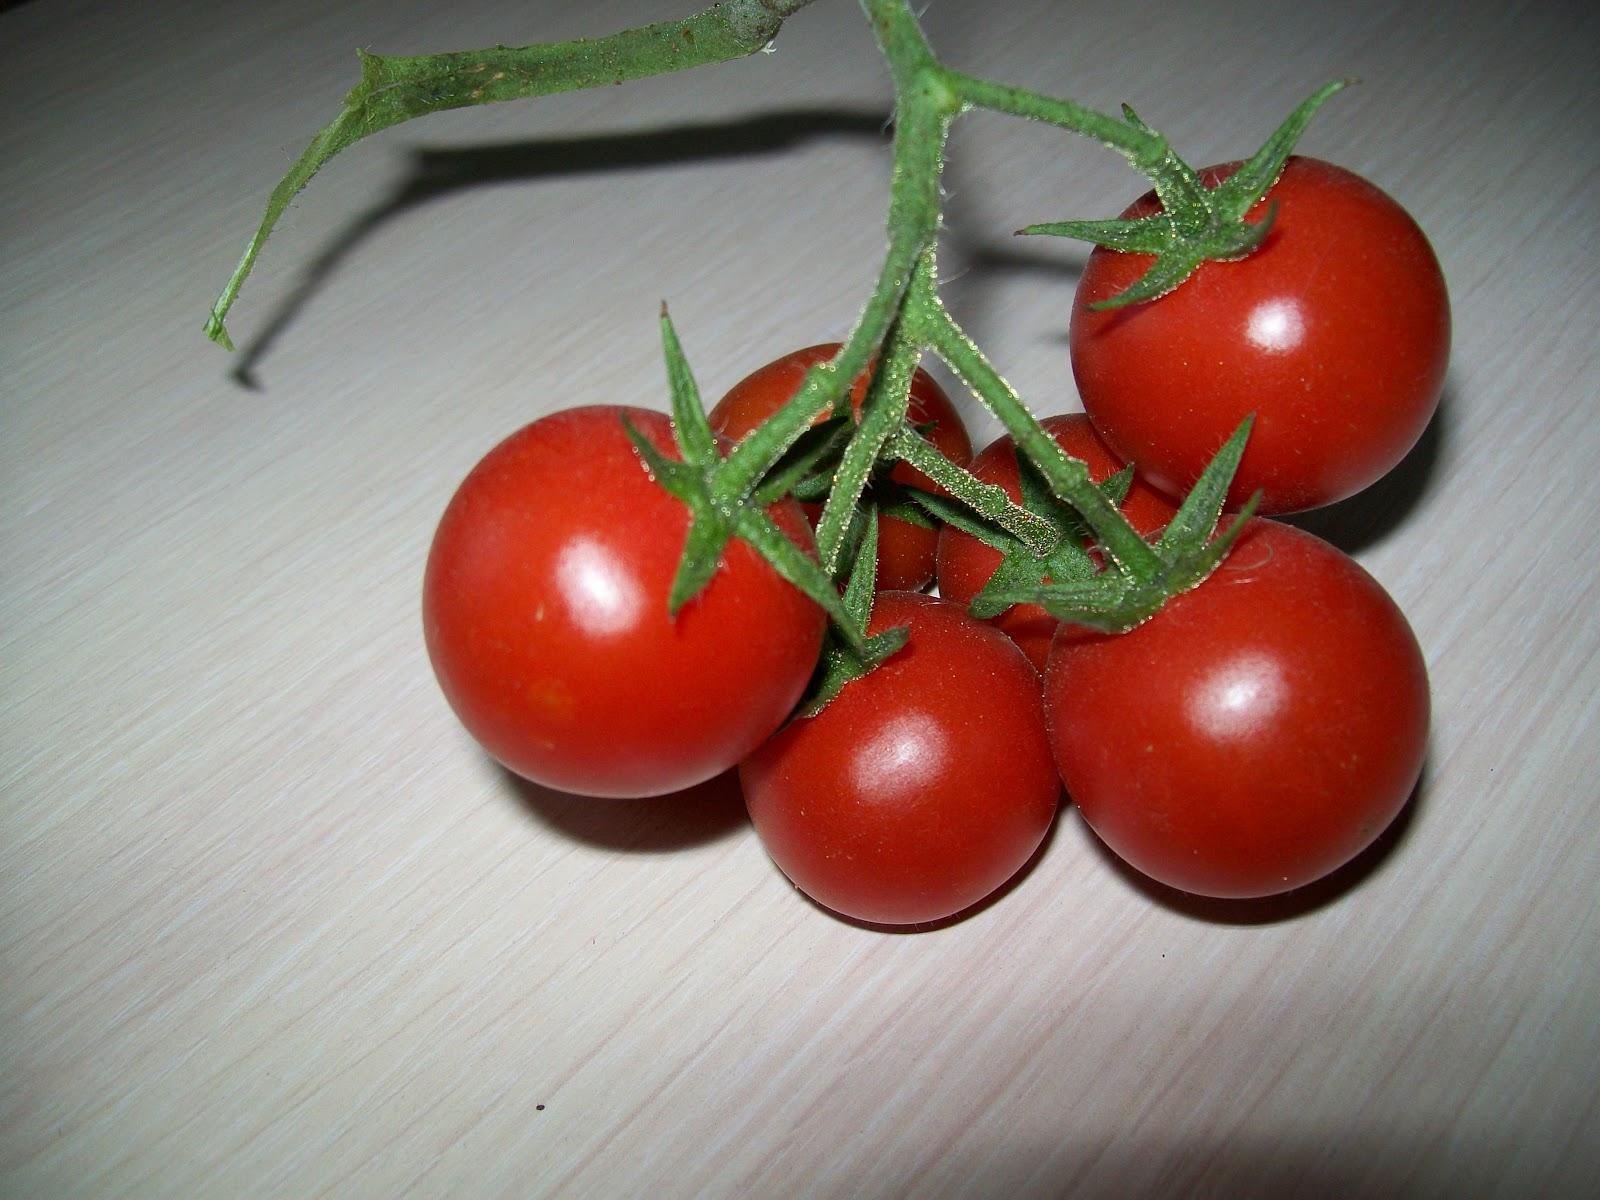 Выращивать помидоры в домашних условиях